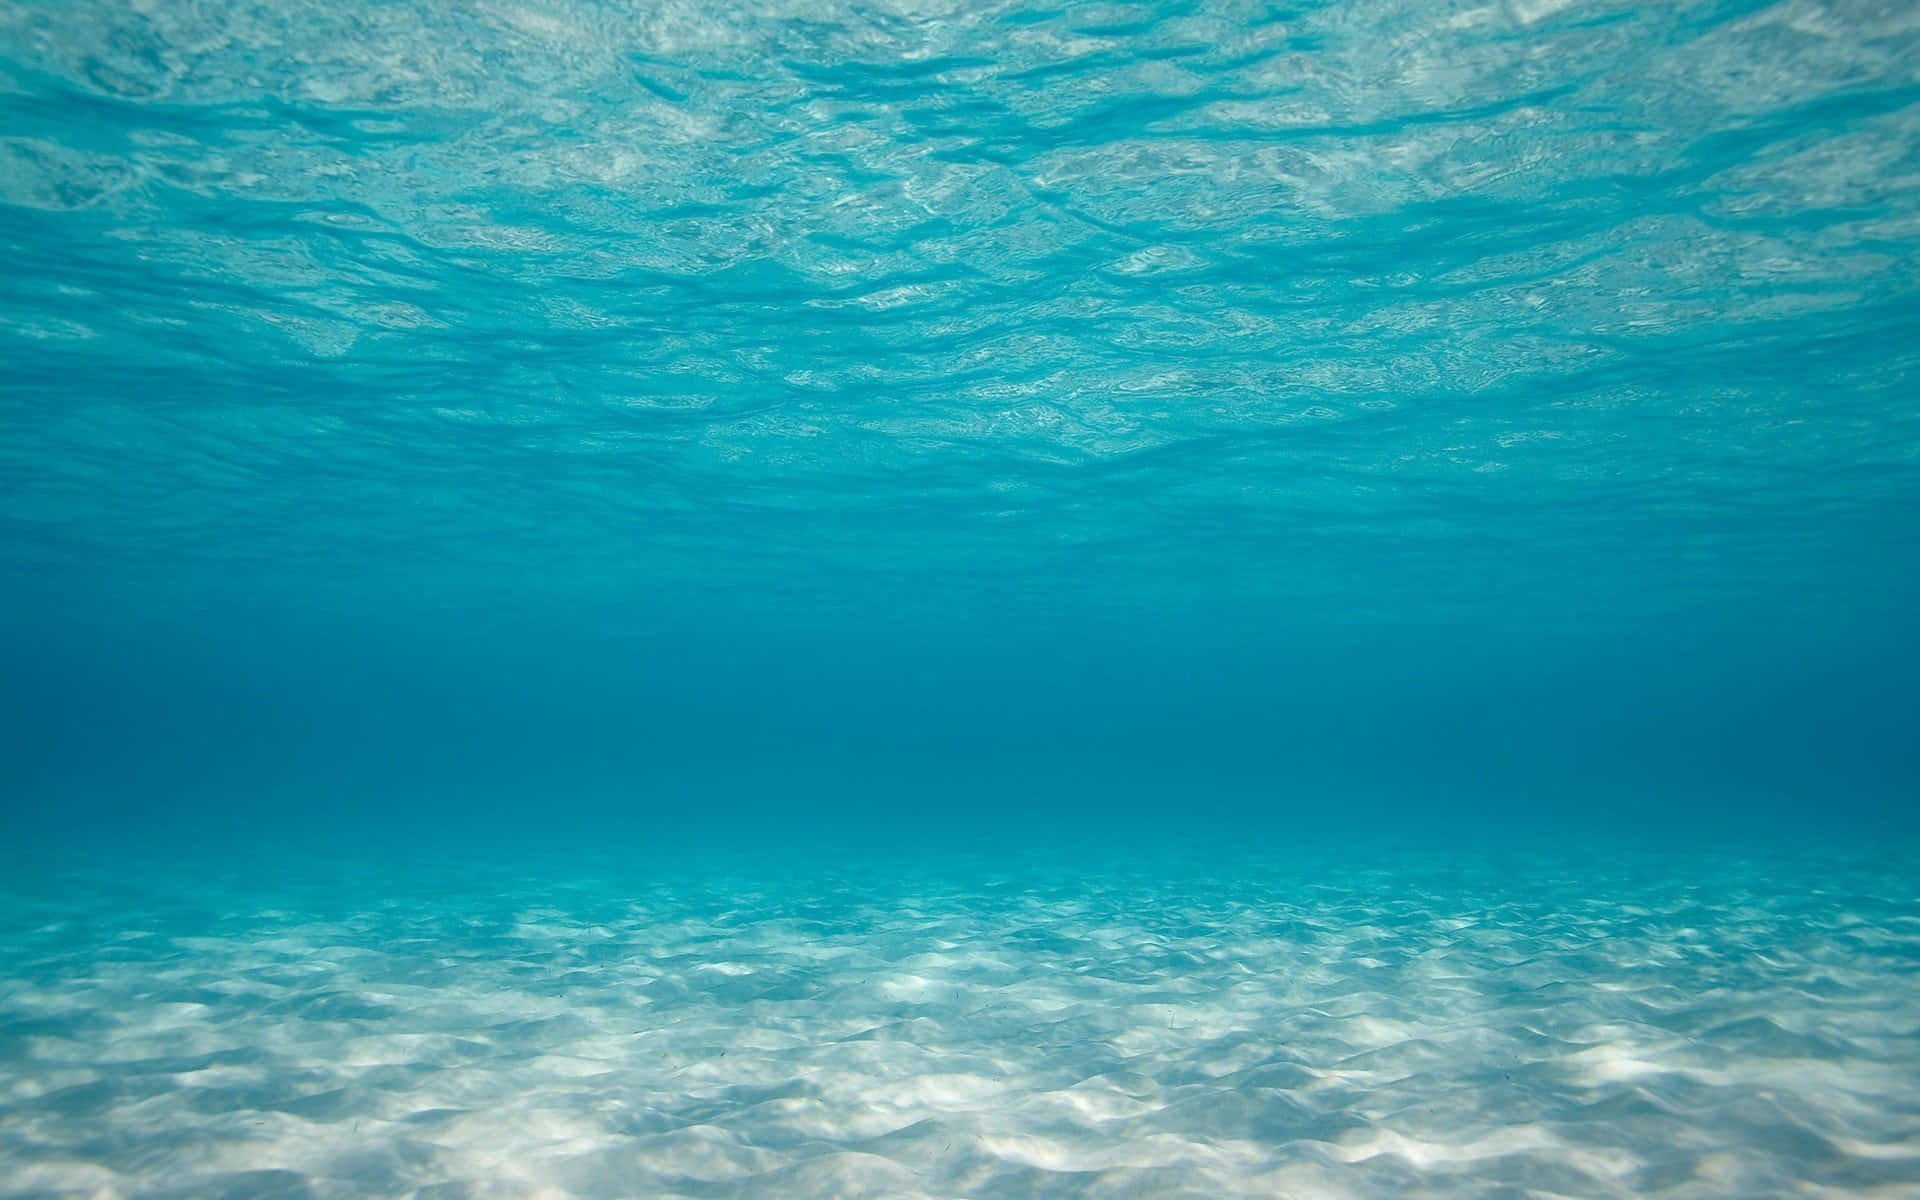 Underwater iPhone Wallpaper  Paisaje marino Fotografía del océano Fondo  de mar